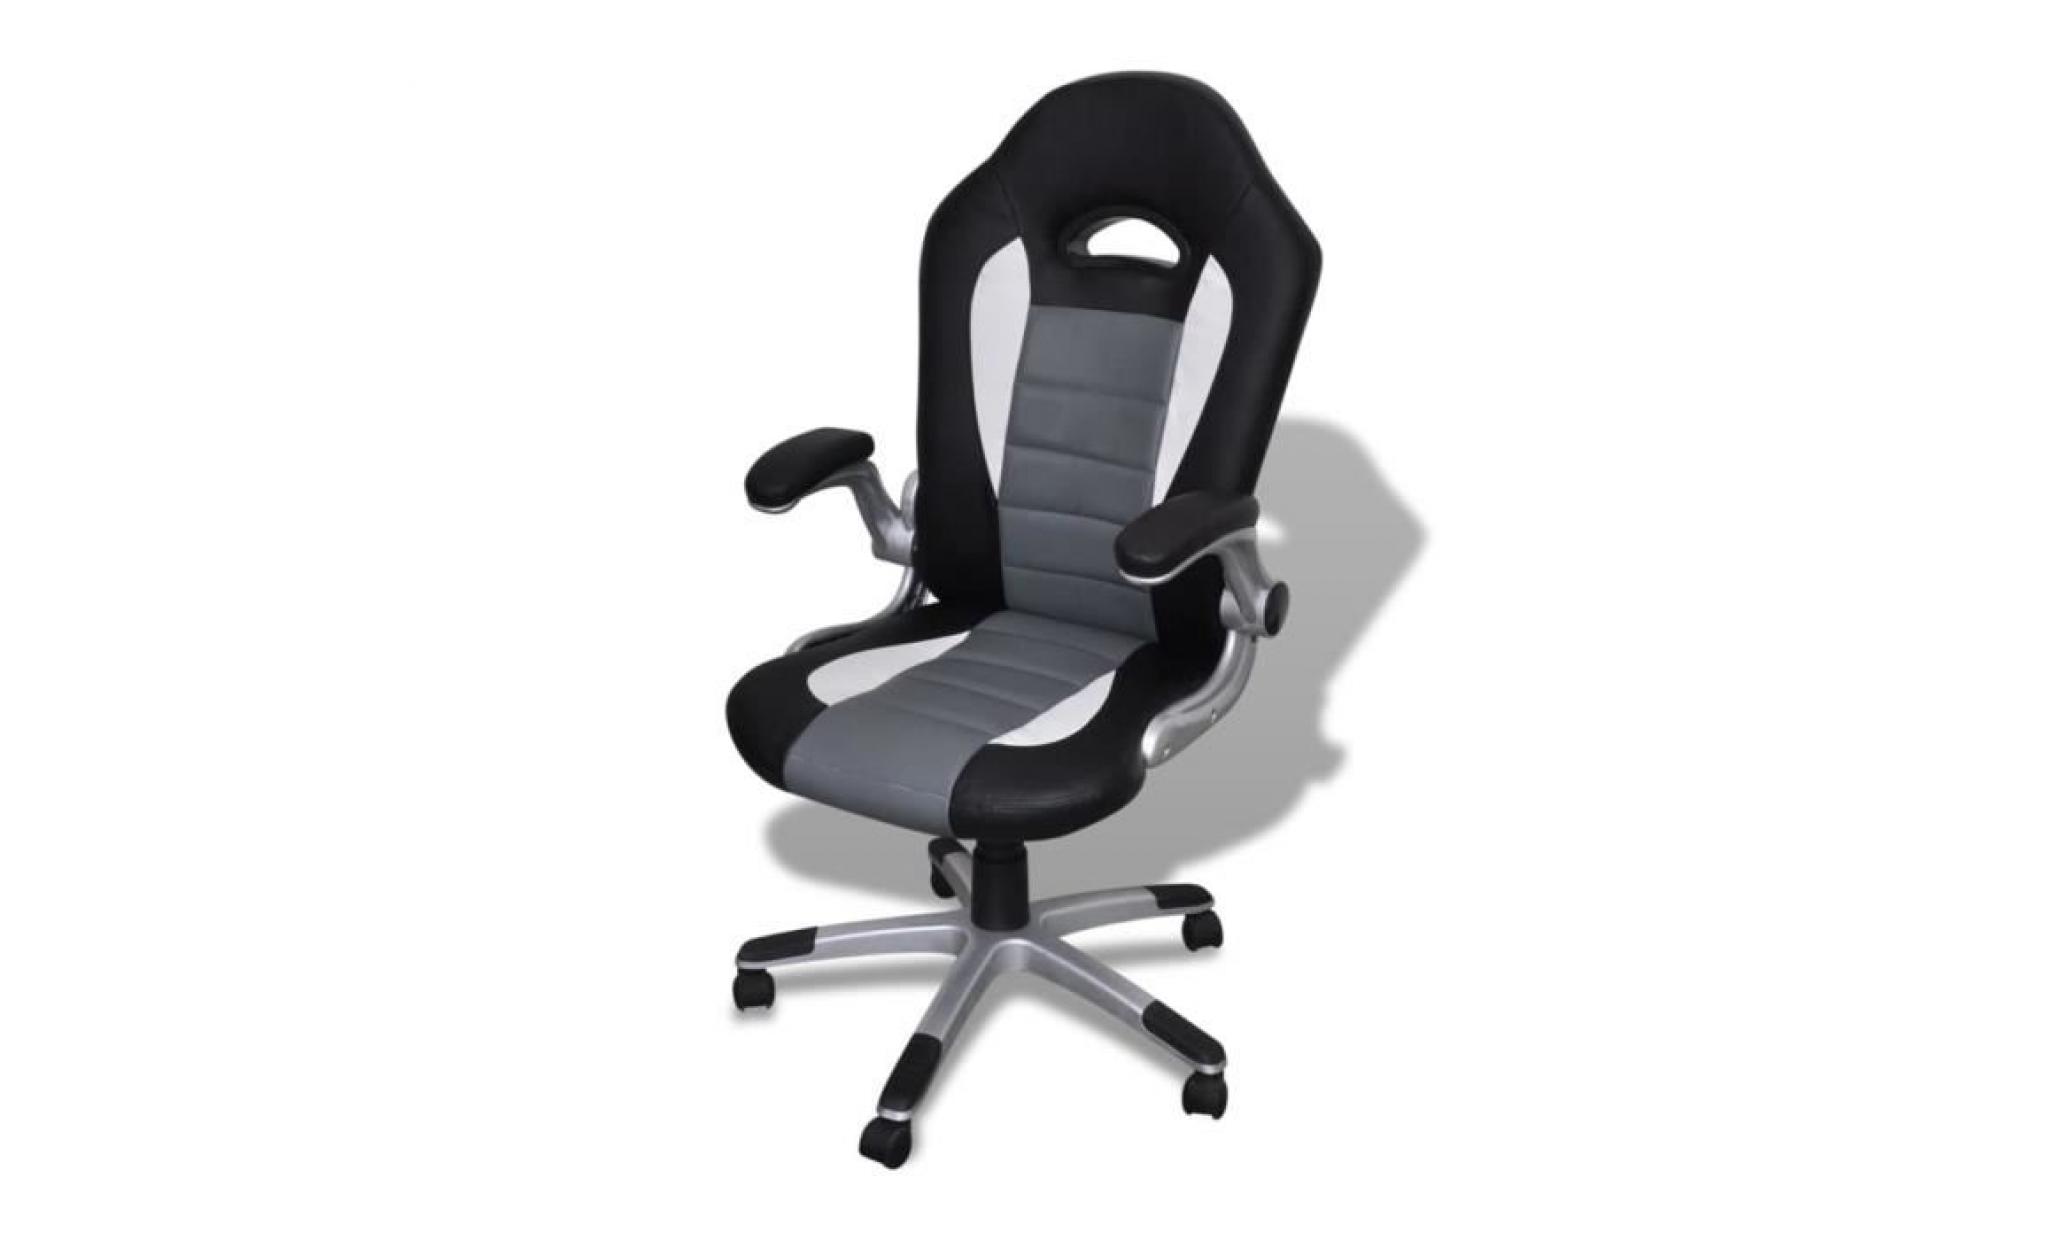 fauteuil de bureau sièges 63 x 70 x 114  124 cm chaise de bureau scandinave contemporainengris design moderne